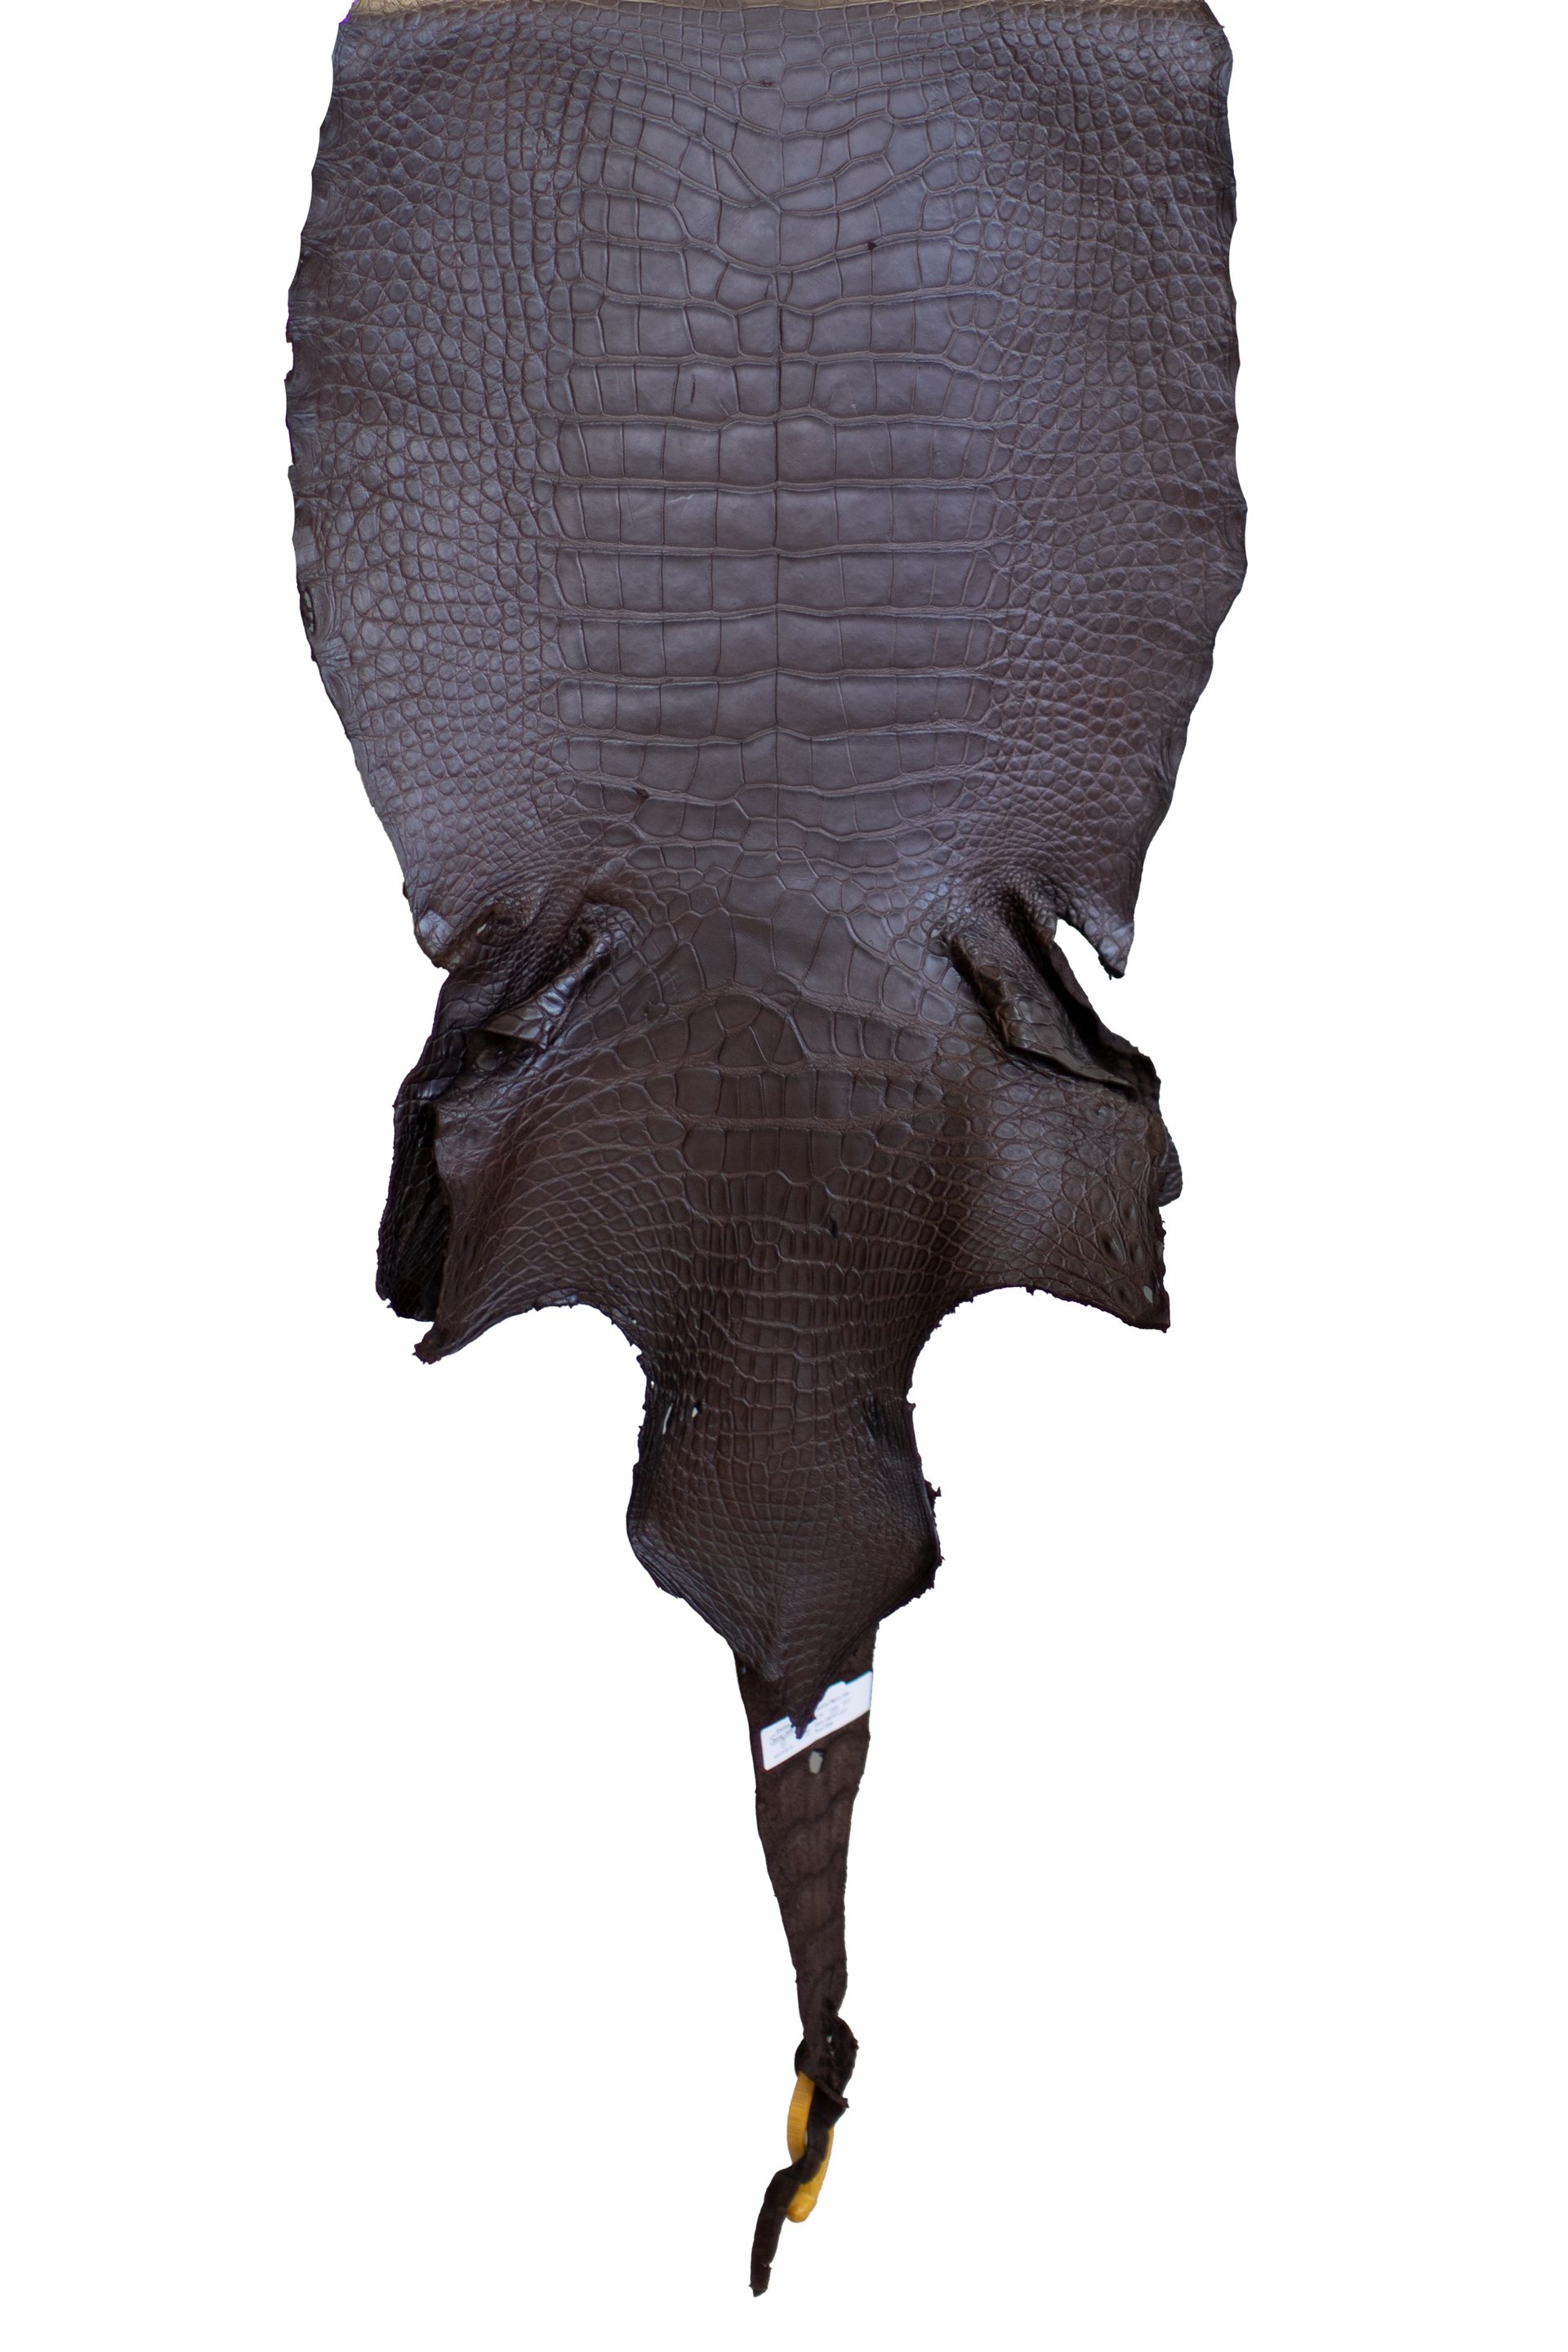 49 cm Grade 4/5 Ideal Brown Matte Wild American Alligator Leather - Tag: LA22-0018995